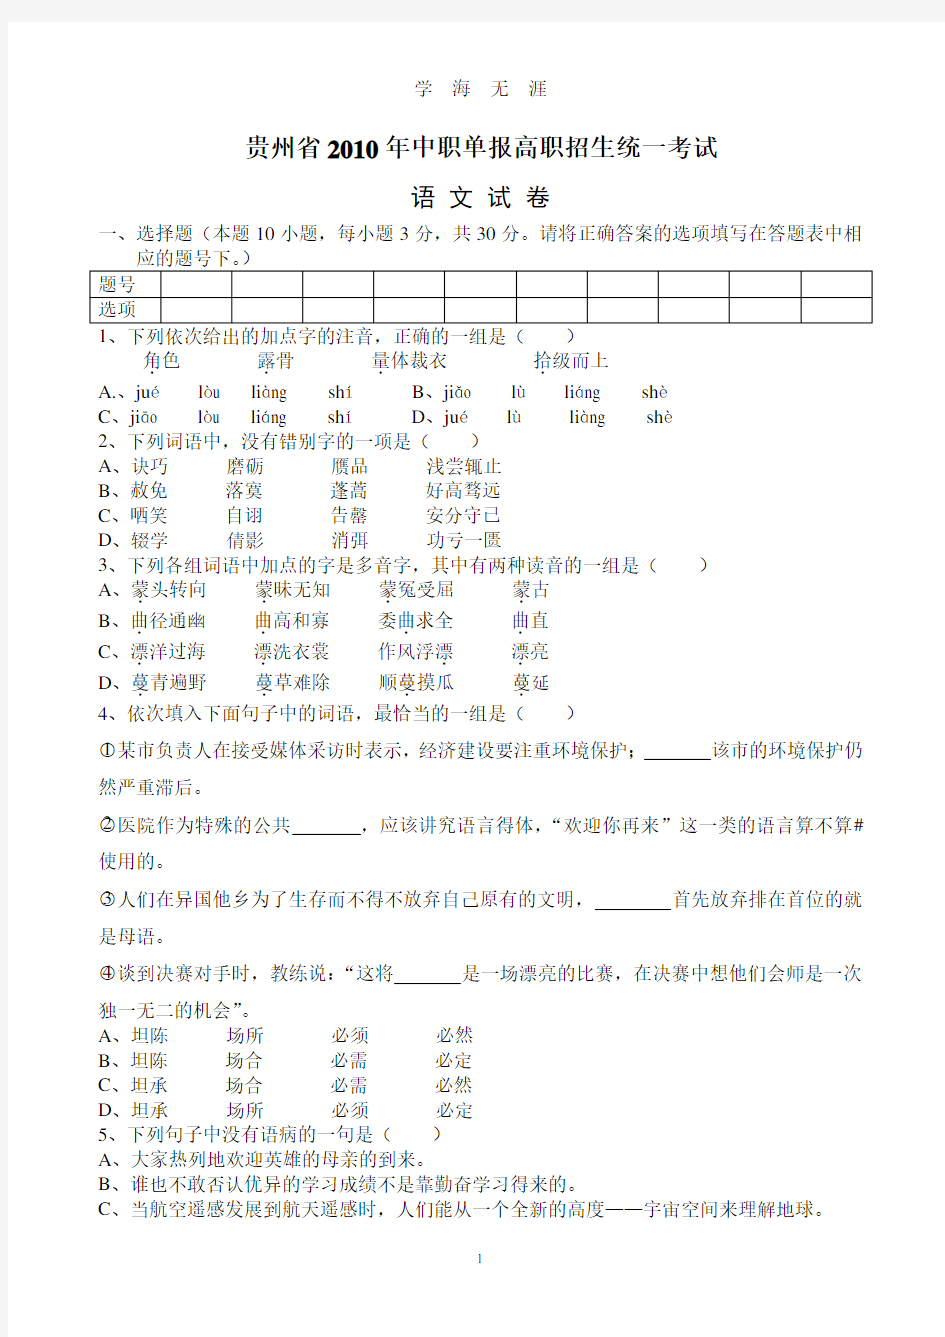 贵州省中职单报高职试卷及答案(2020年8月整理).pdf